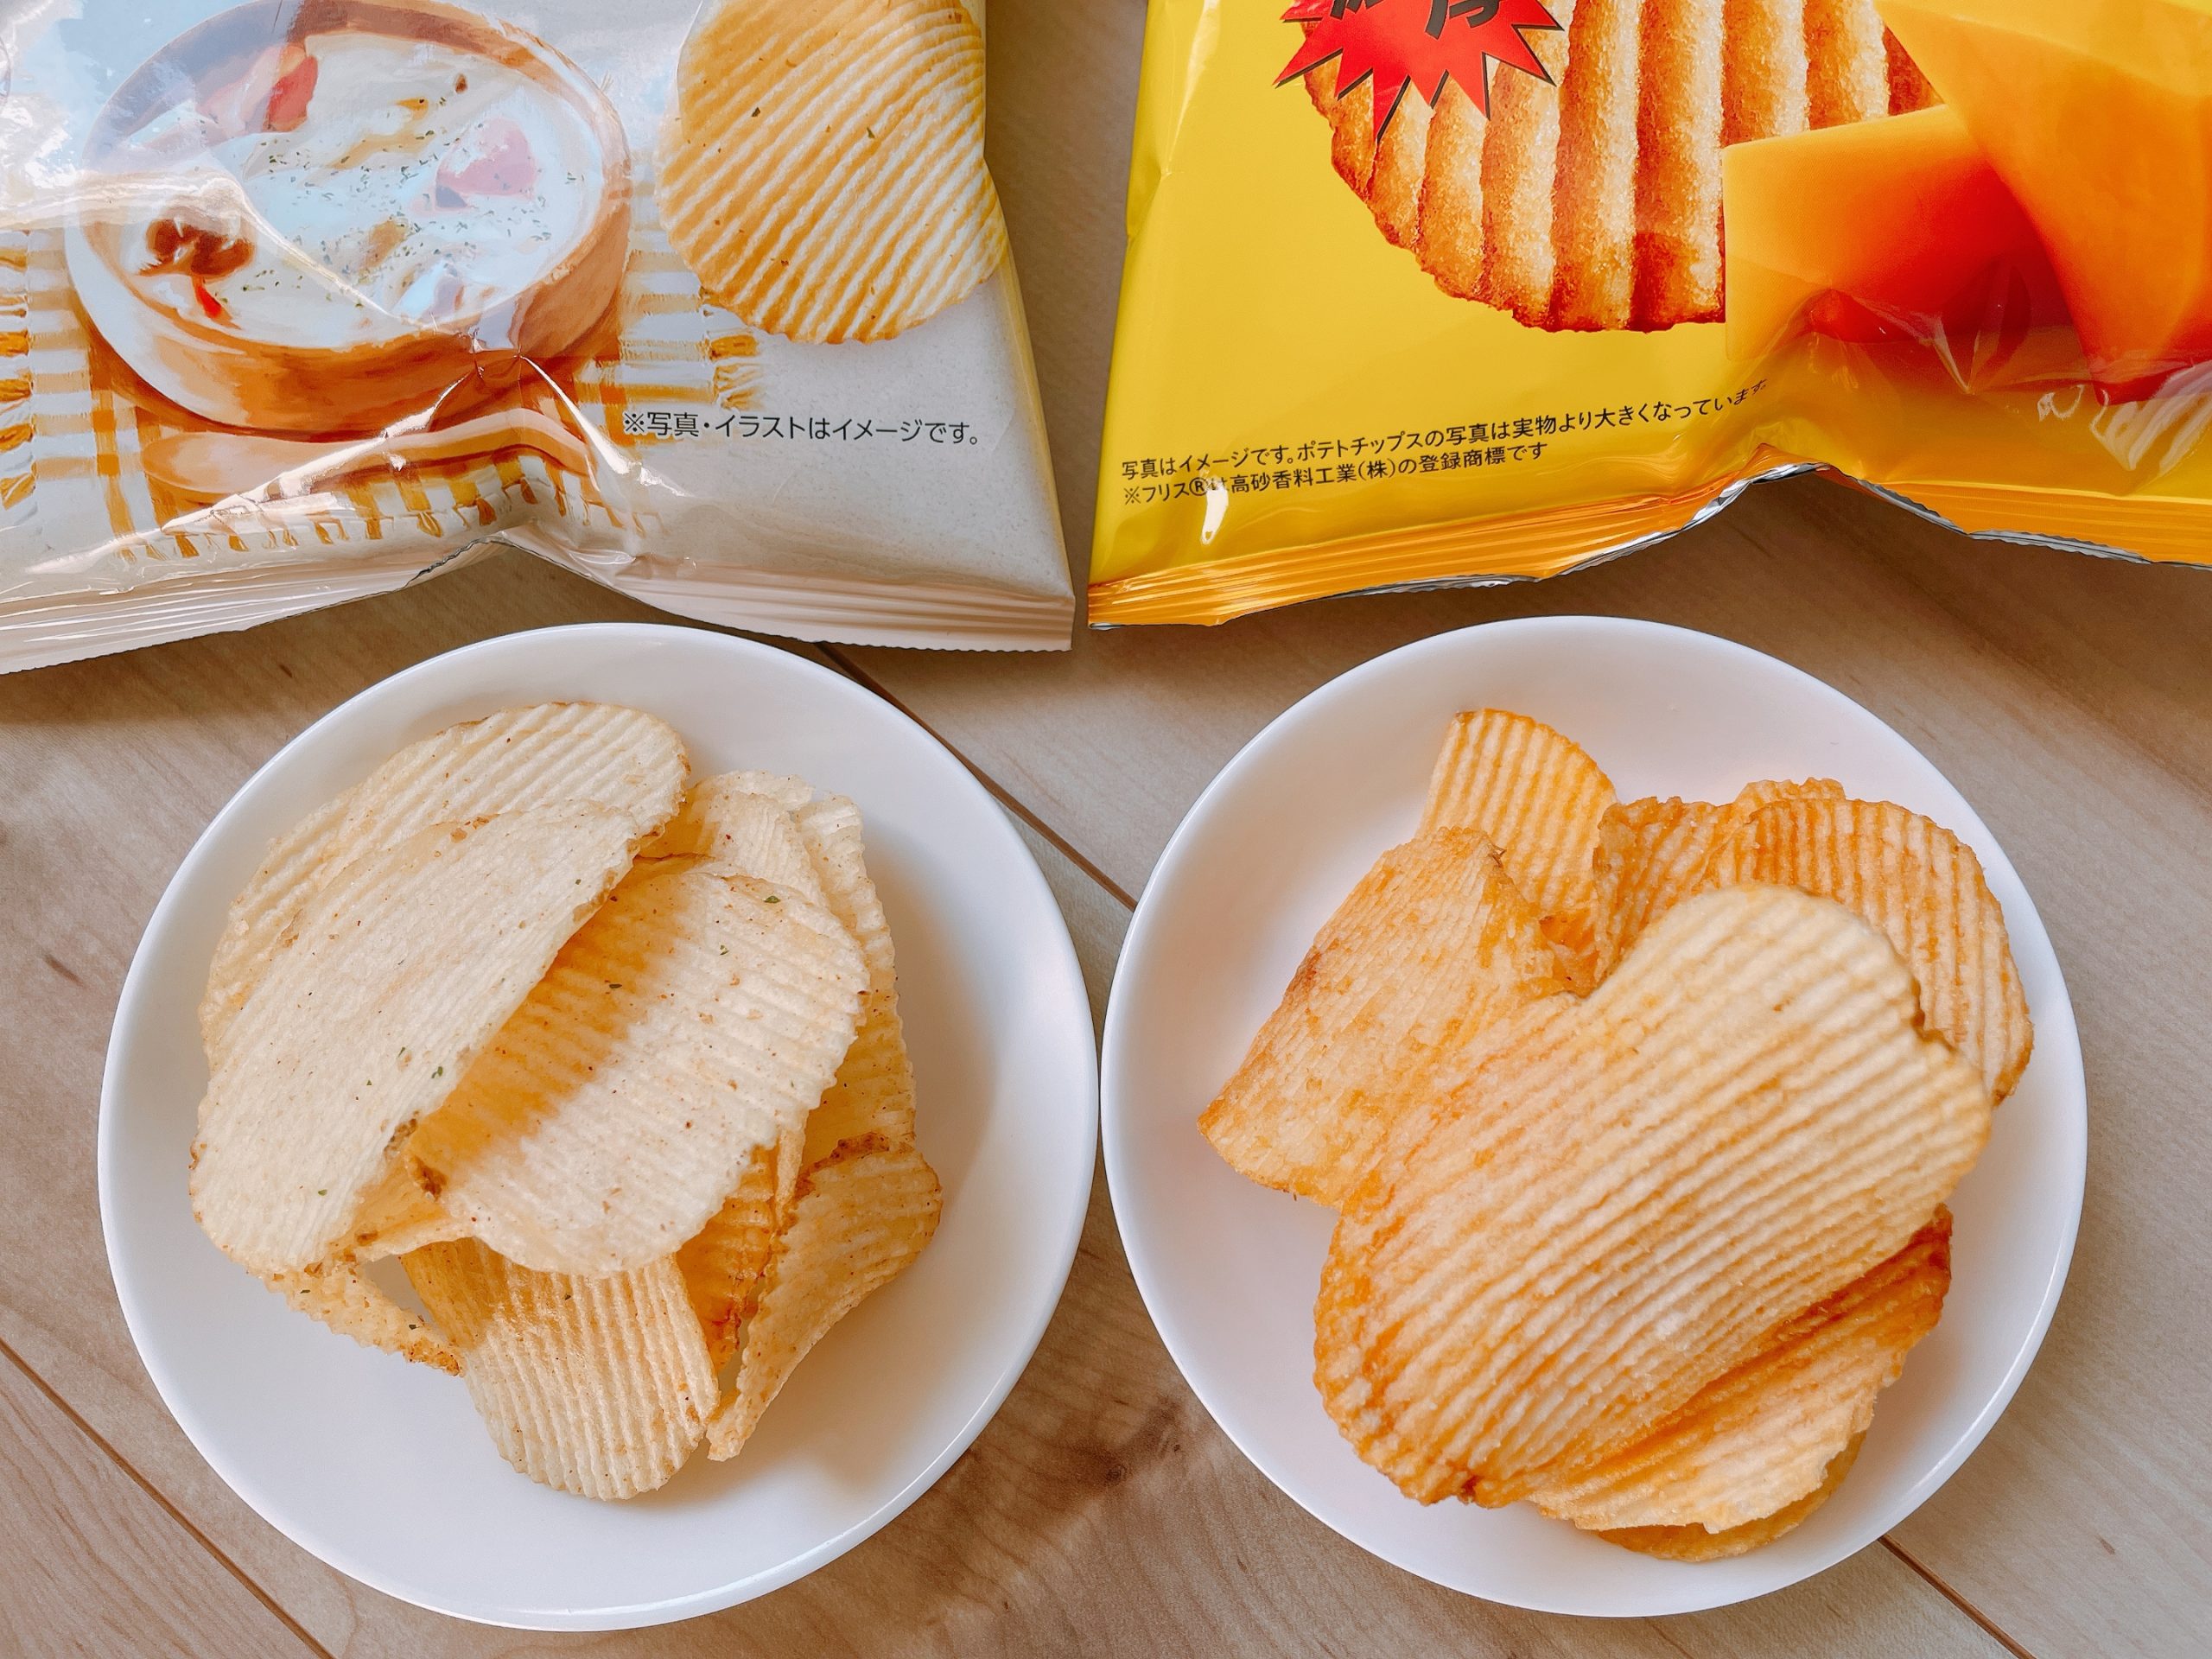 クリームシチューとチェダーチーズのポテトチップスの組み合わせは、食感もがちゃがちゃする